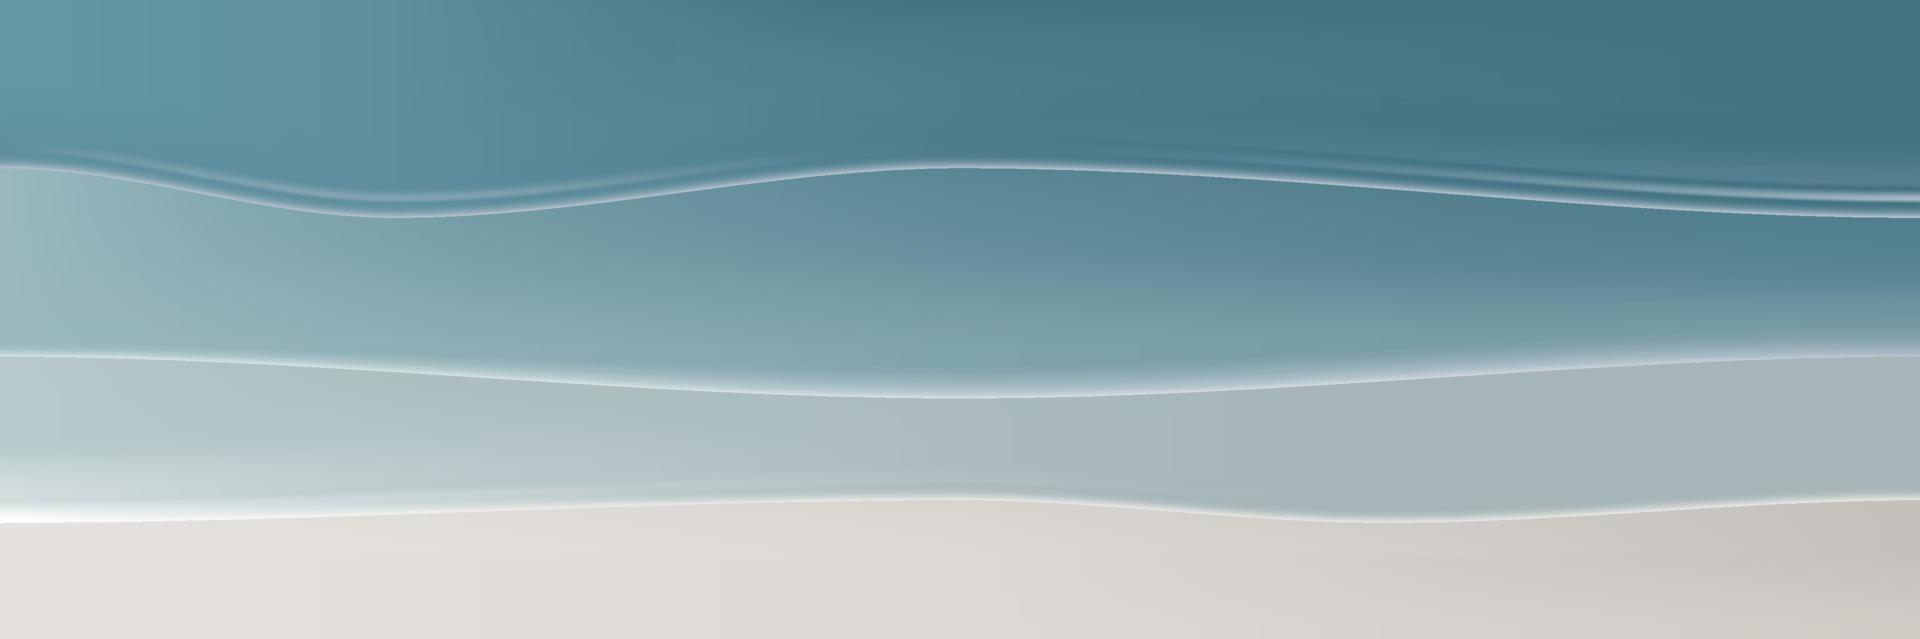 Fondo de banner de verano azul mar y playa con ondulación abstracta vector